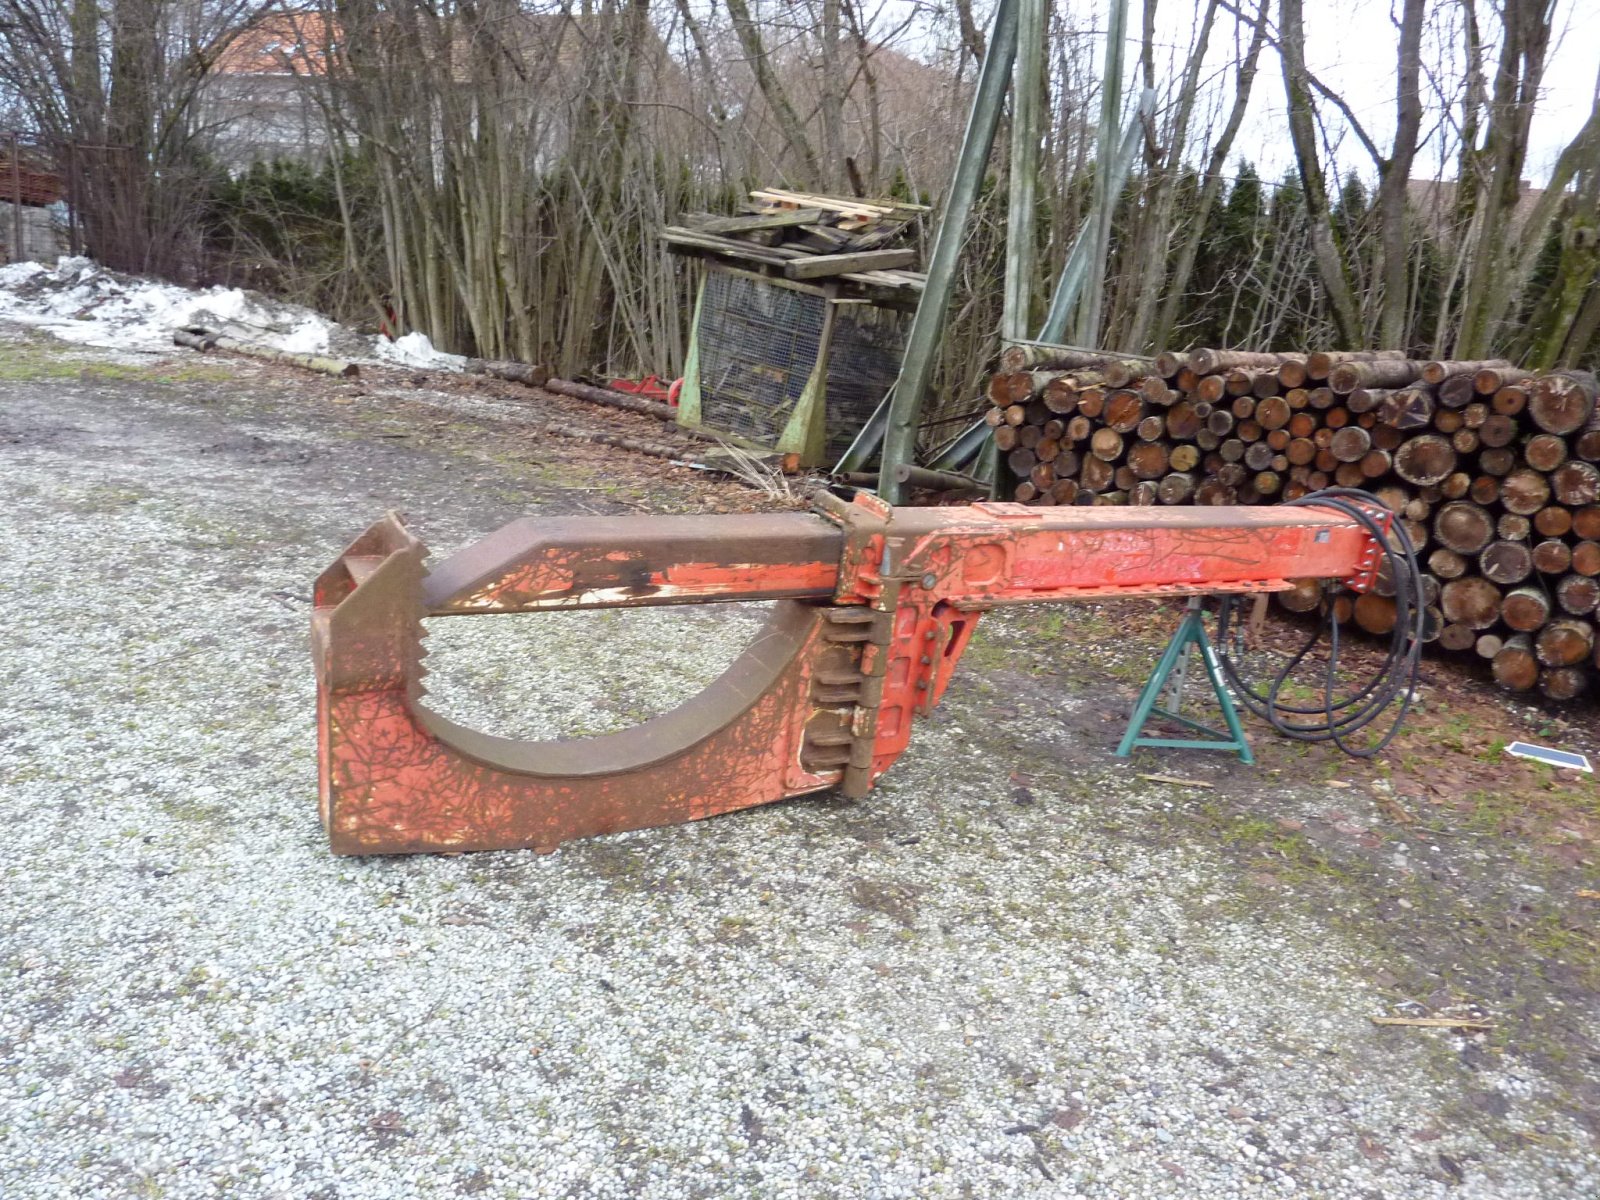 Holzspalter des Typs Eschlböck Spaltbiber, Spaltzange,, Gebrauchtmaschine in Bockhorn (Bild 1)